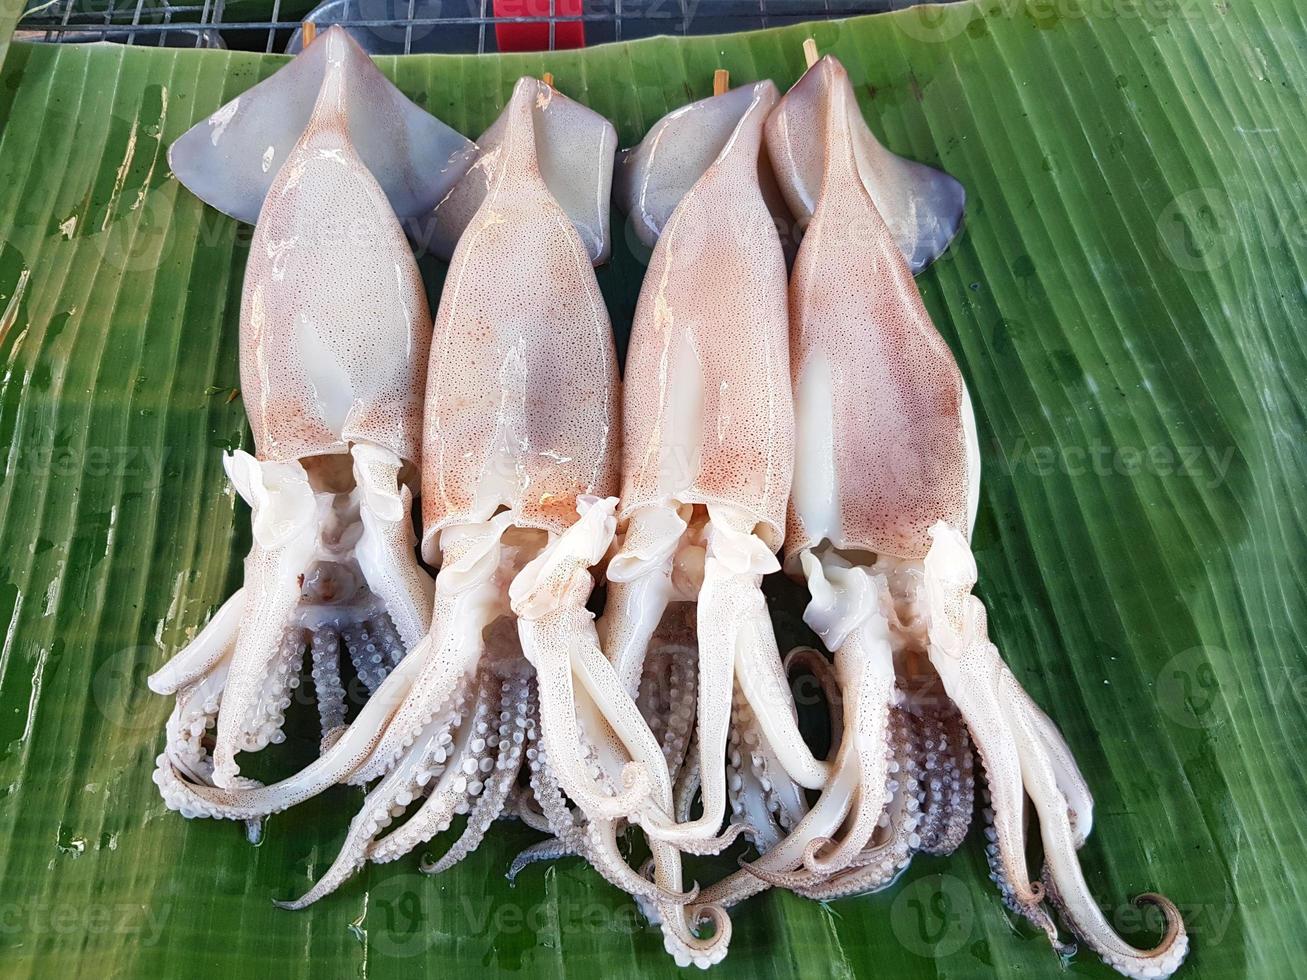 bläckfiskar på bananblad för grill på thailändsk marknad foto